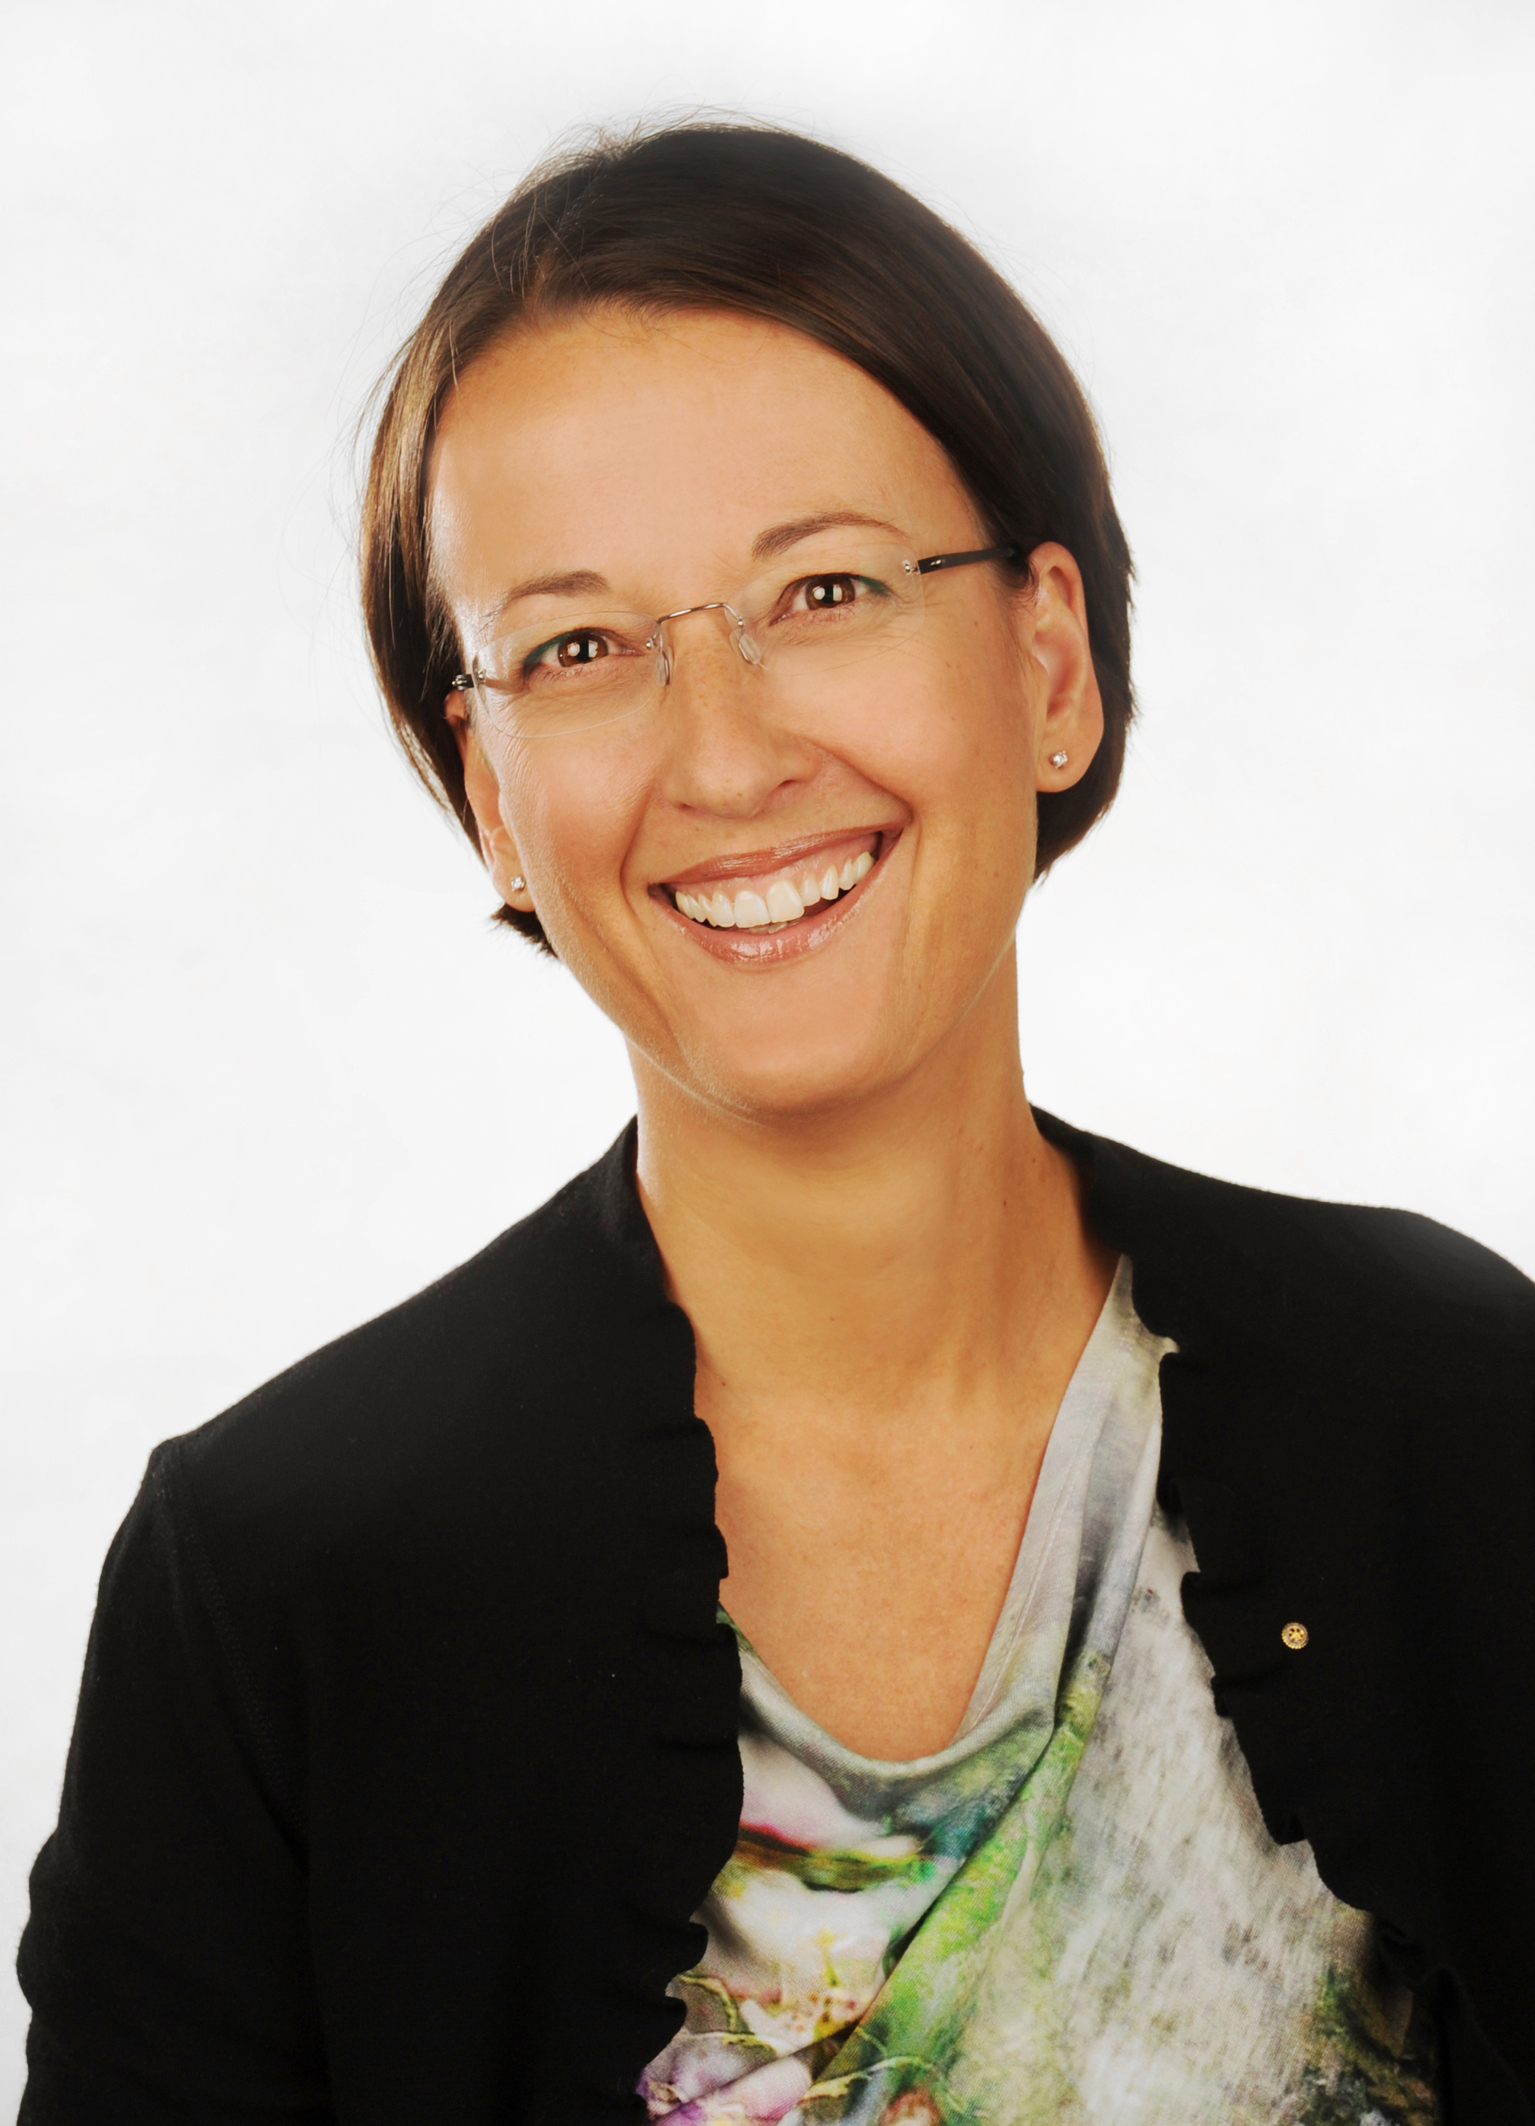  Rechtsanwältin Anja Waertel aus Weiden. Foto: © Ecovis